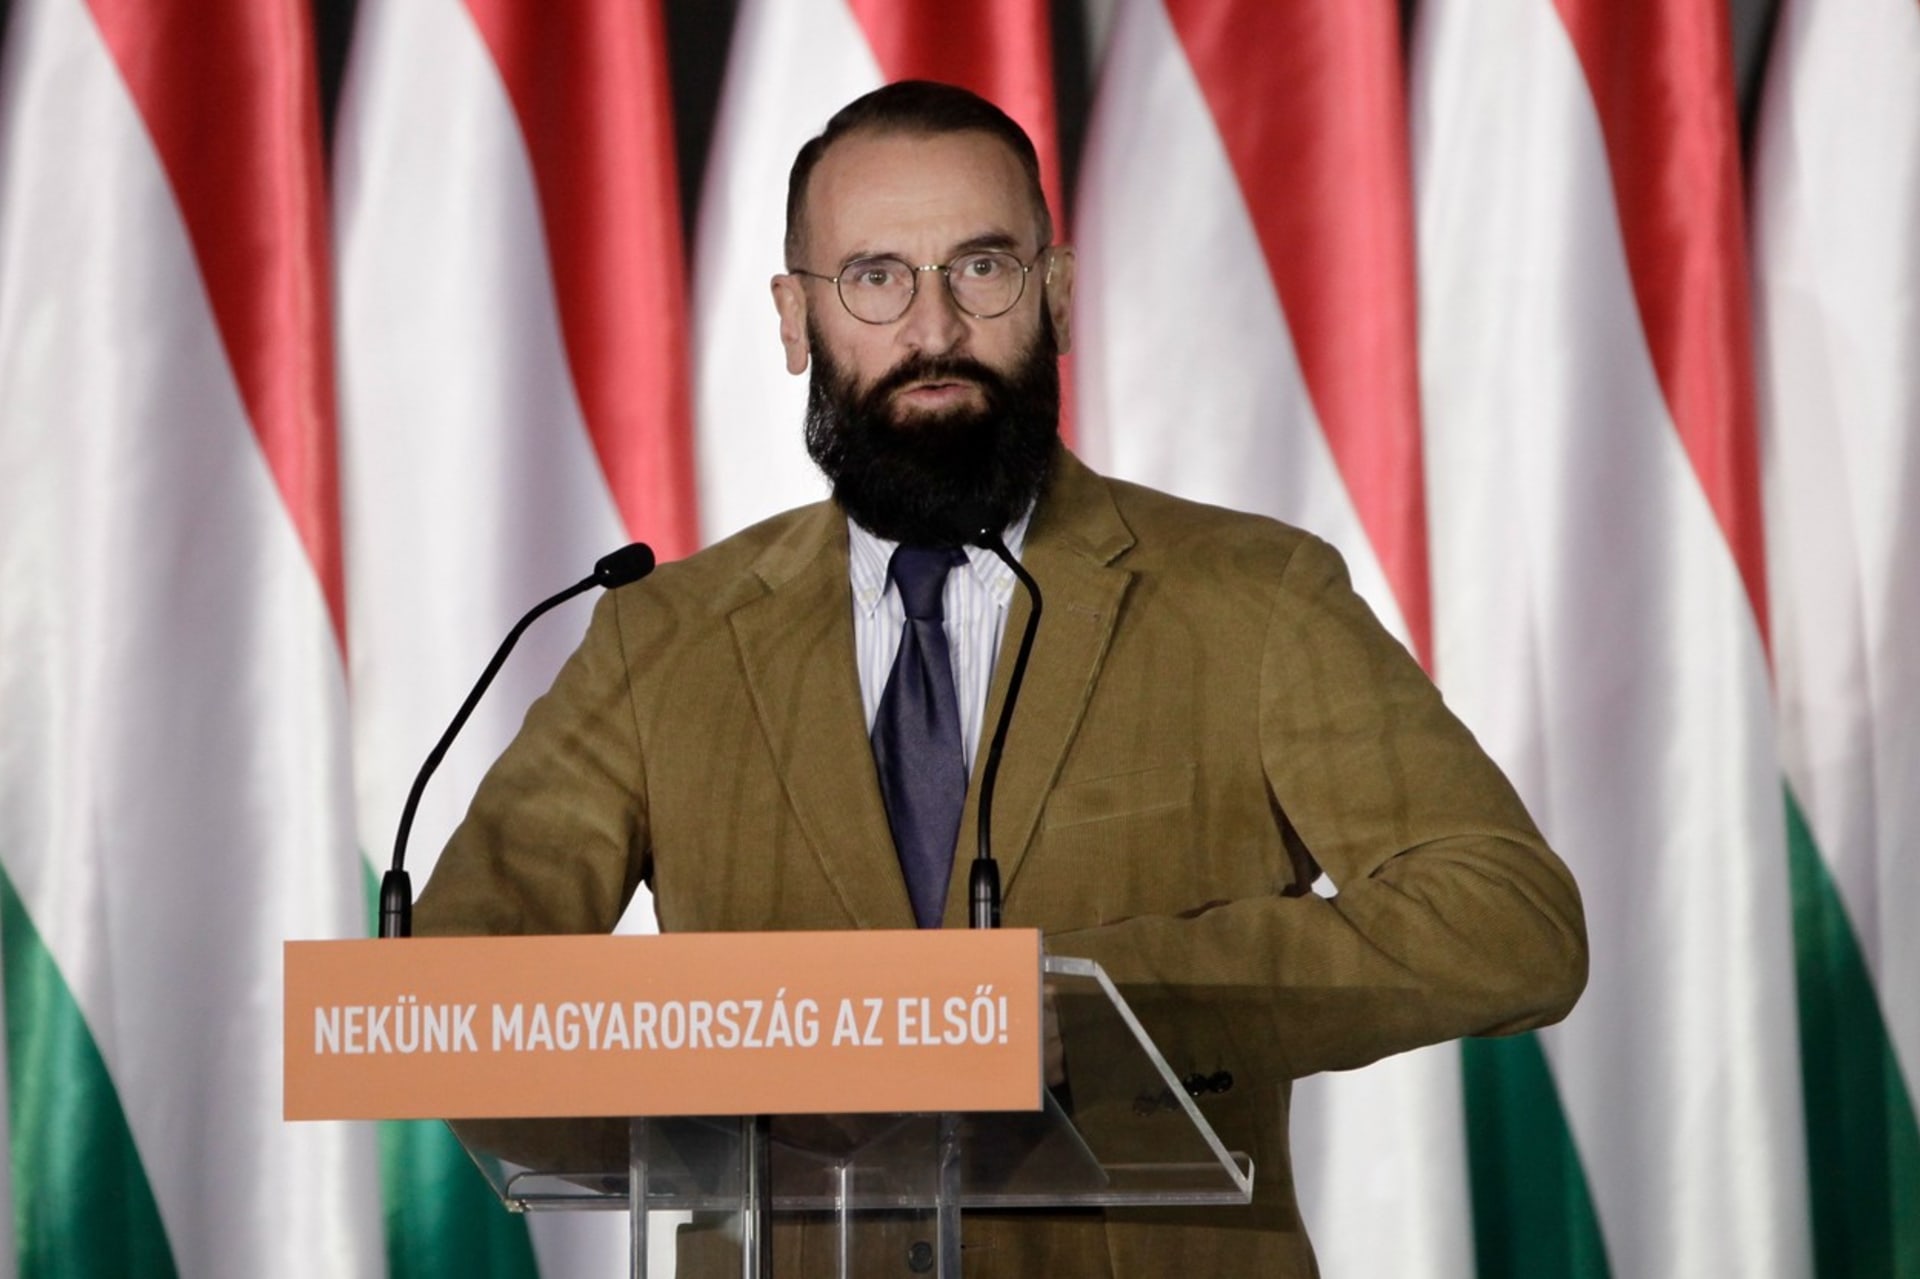 Maďarský europoslanec byl přistižen při orgiích. 1